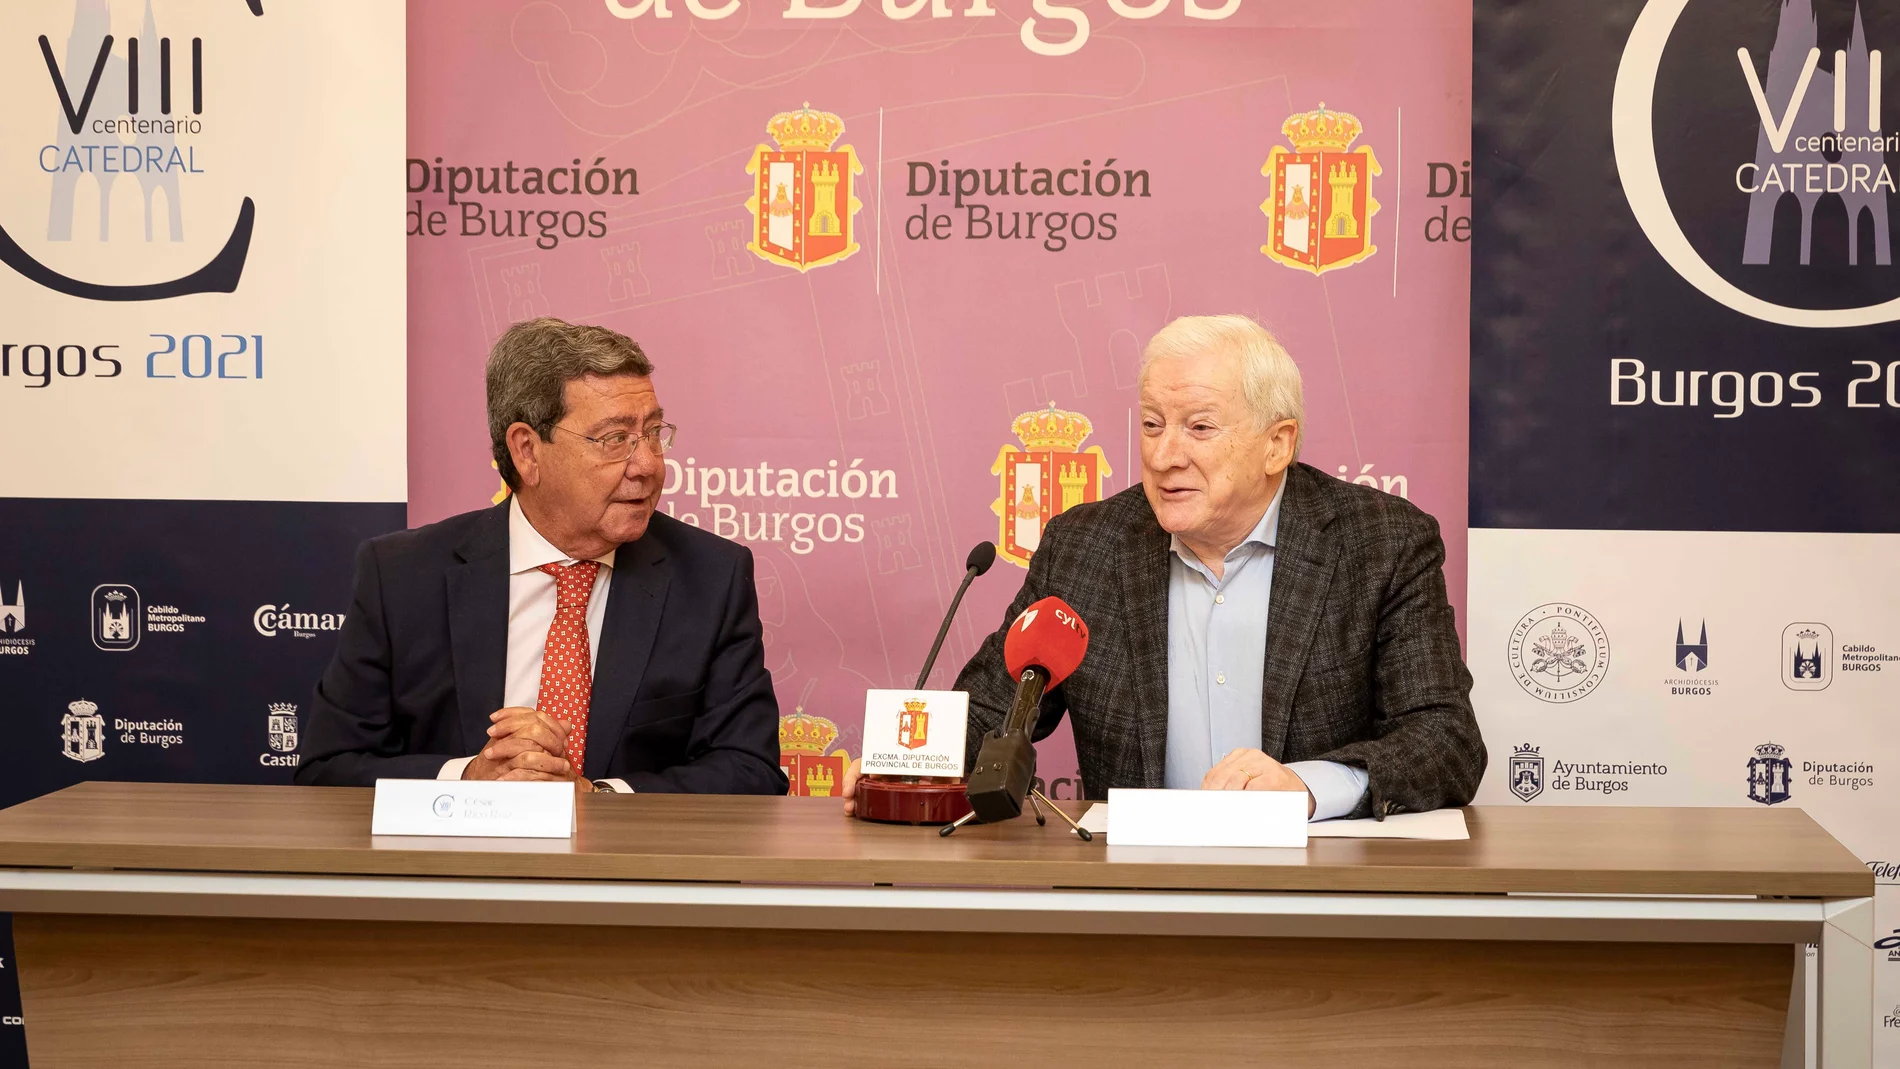 César Rico, presidente de la Diputación Provincial, y Antonio Miguel Méndez Pozo, vicepresidente de la Fundación VIII Centenario de la Catedral. Burgos 2021, presentan la actividad